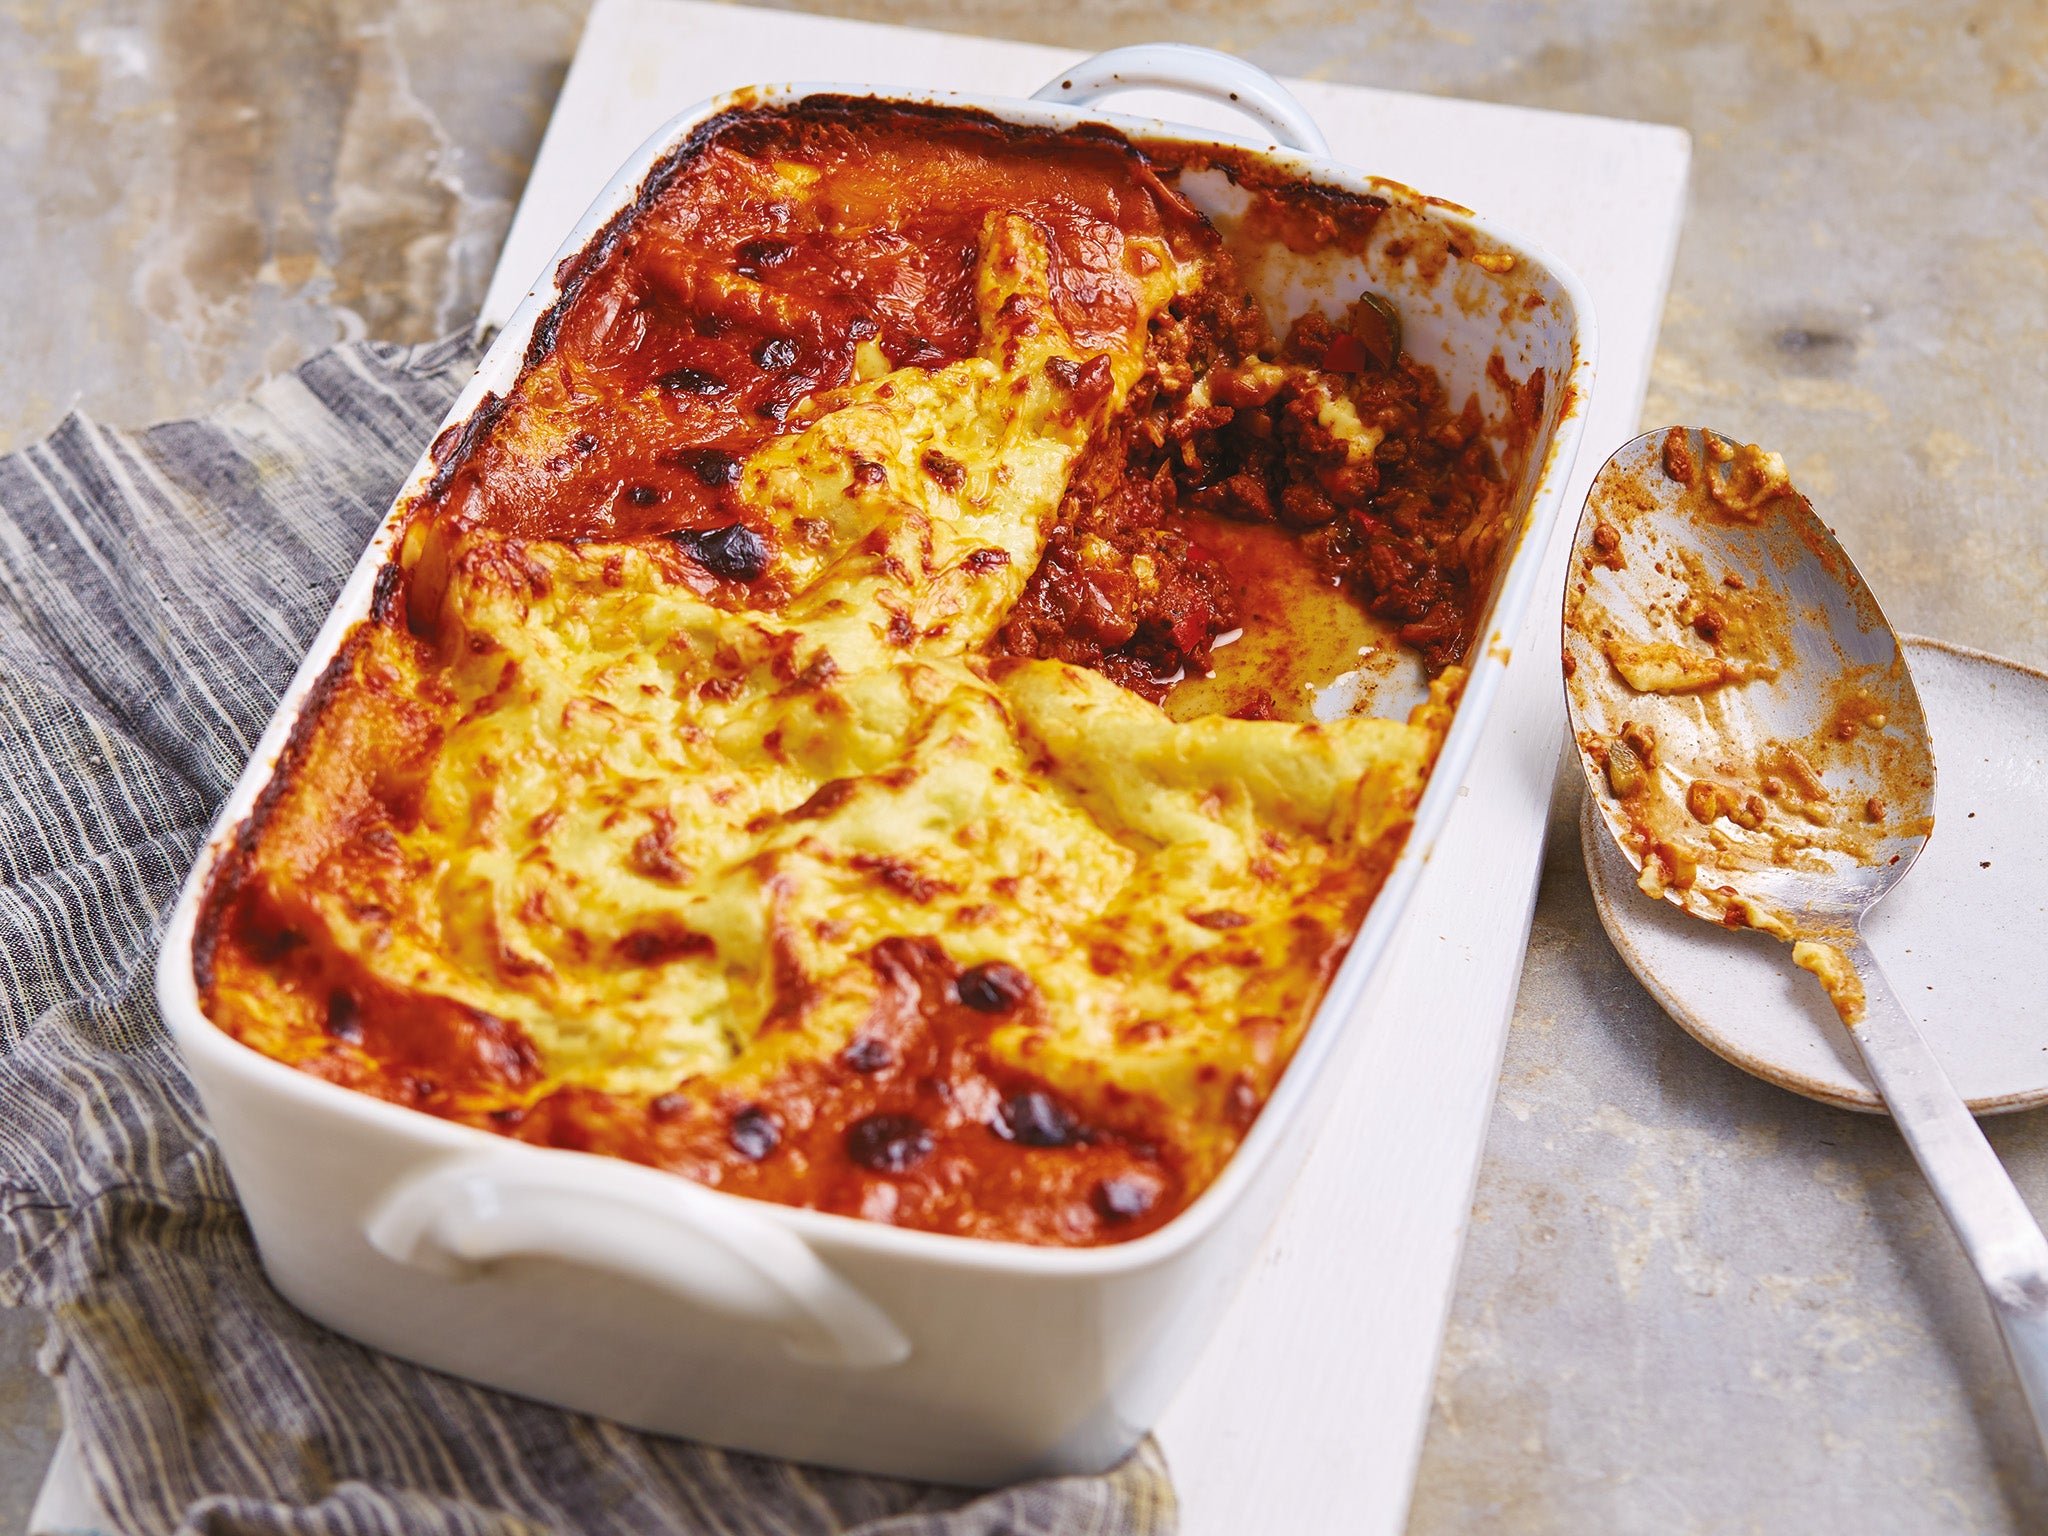 Best classic lasagne recipe | The Independent